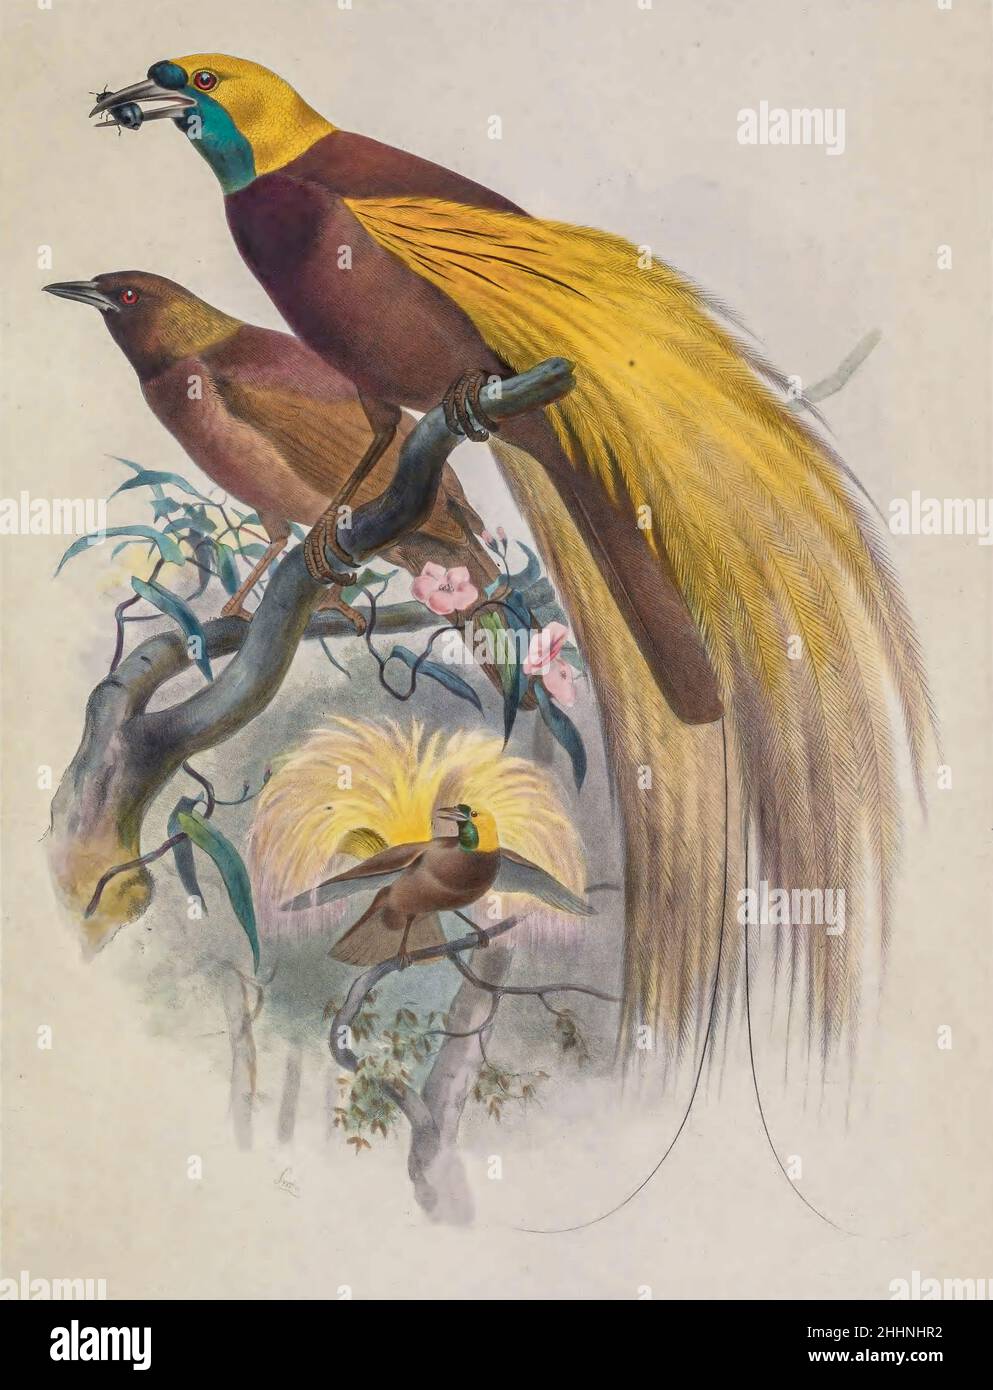 Der größere Paradiesvögel (Paradisaea apoda) ist ein Paradiesvögel der Gattung Paradisaea. Getönte Lithographie illustriert von Joseph Smit, aus dem Buch "die schönen und neugierigen Vögel der Welt" von Charles Barney Cory, Veröffentlicht vom Autor für die Abonnenten Boston USA 1883. Die Platten sind getönte Lithographien, einige mit zusätzlicher Handfärbung Stockfoto